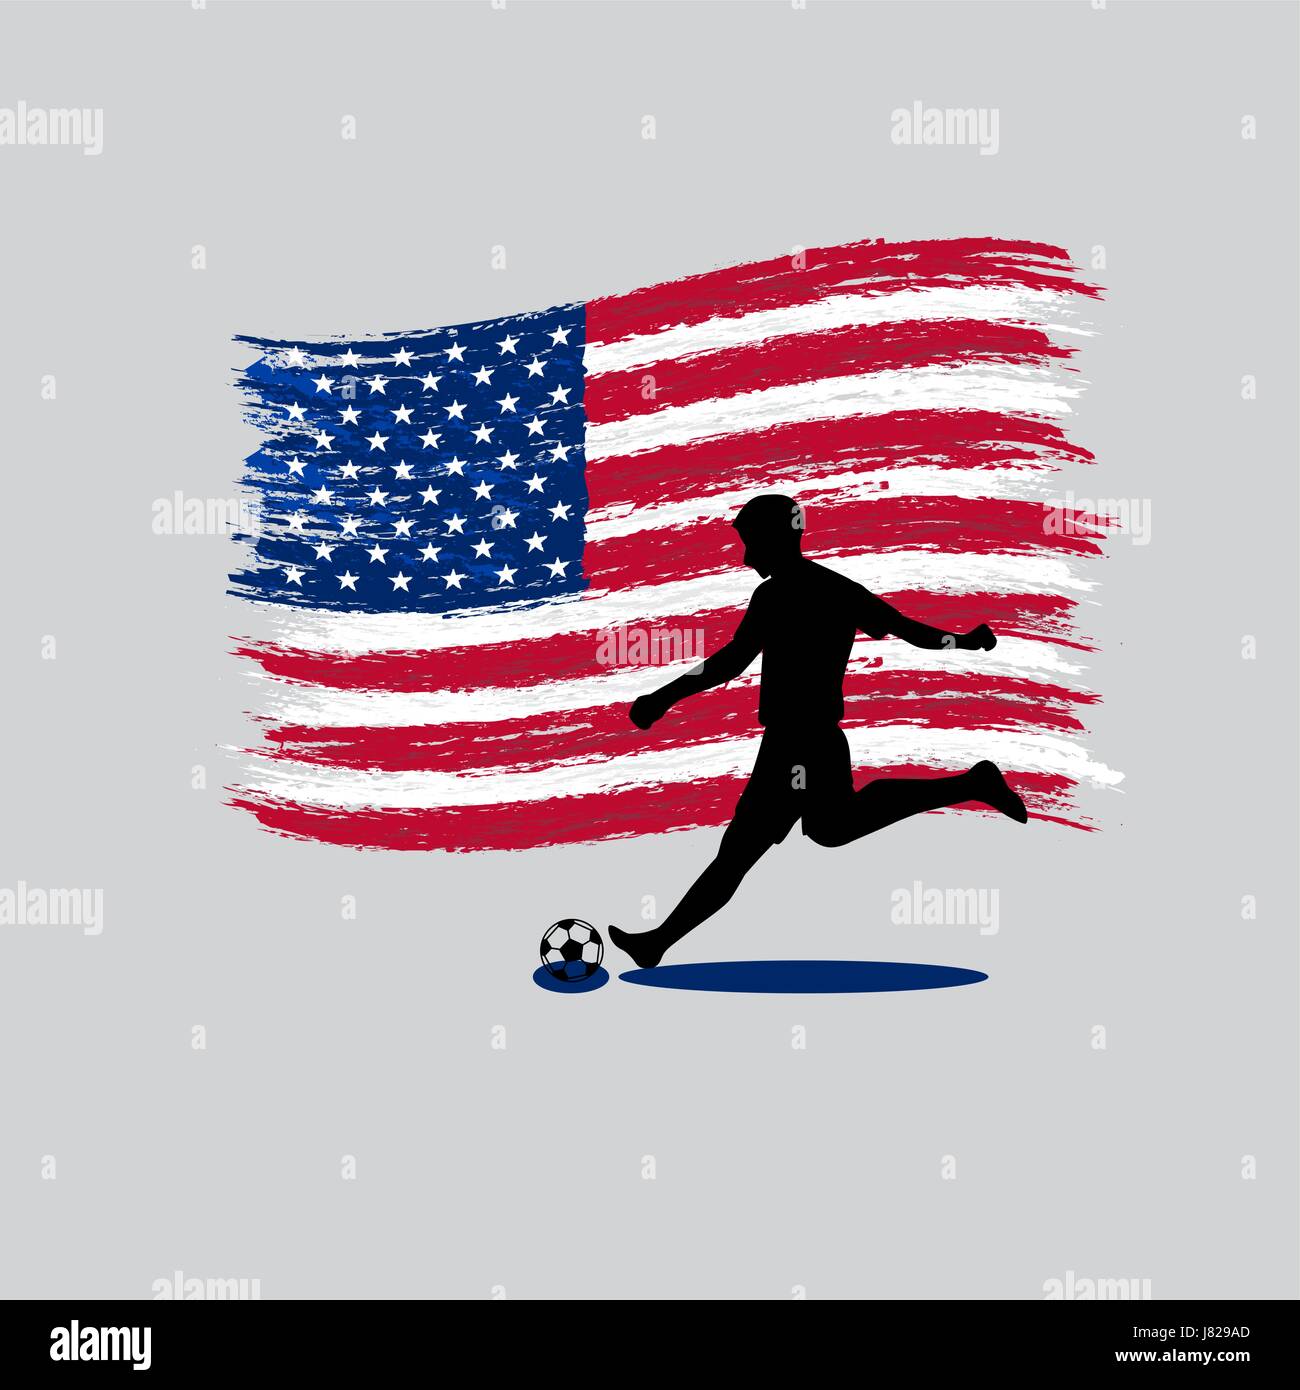 Joueur de football action avec United States of America flag on background Illustration de Vecteur